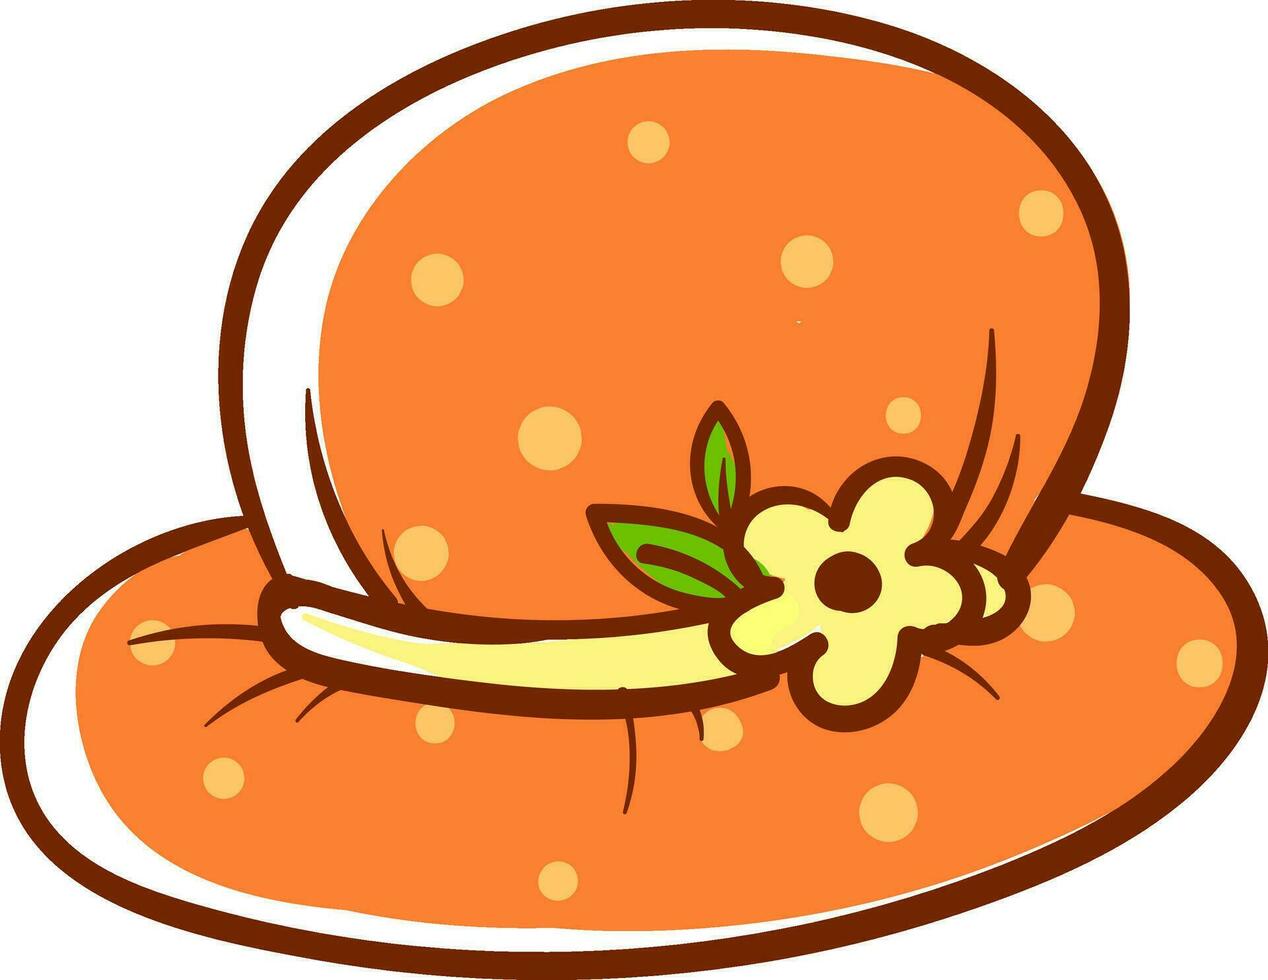 chapéu laranja, ilustração, vetor em fundo branco